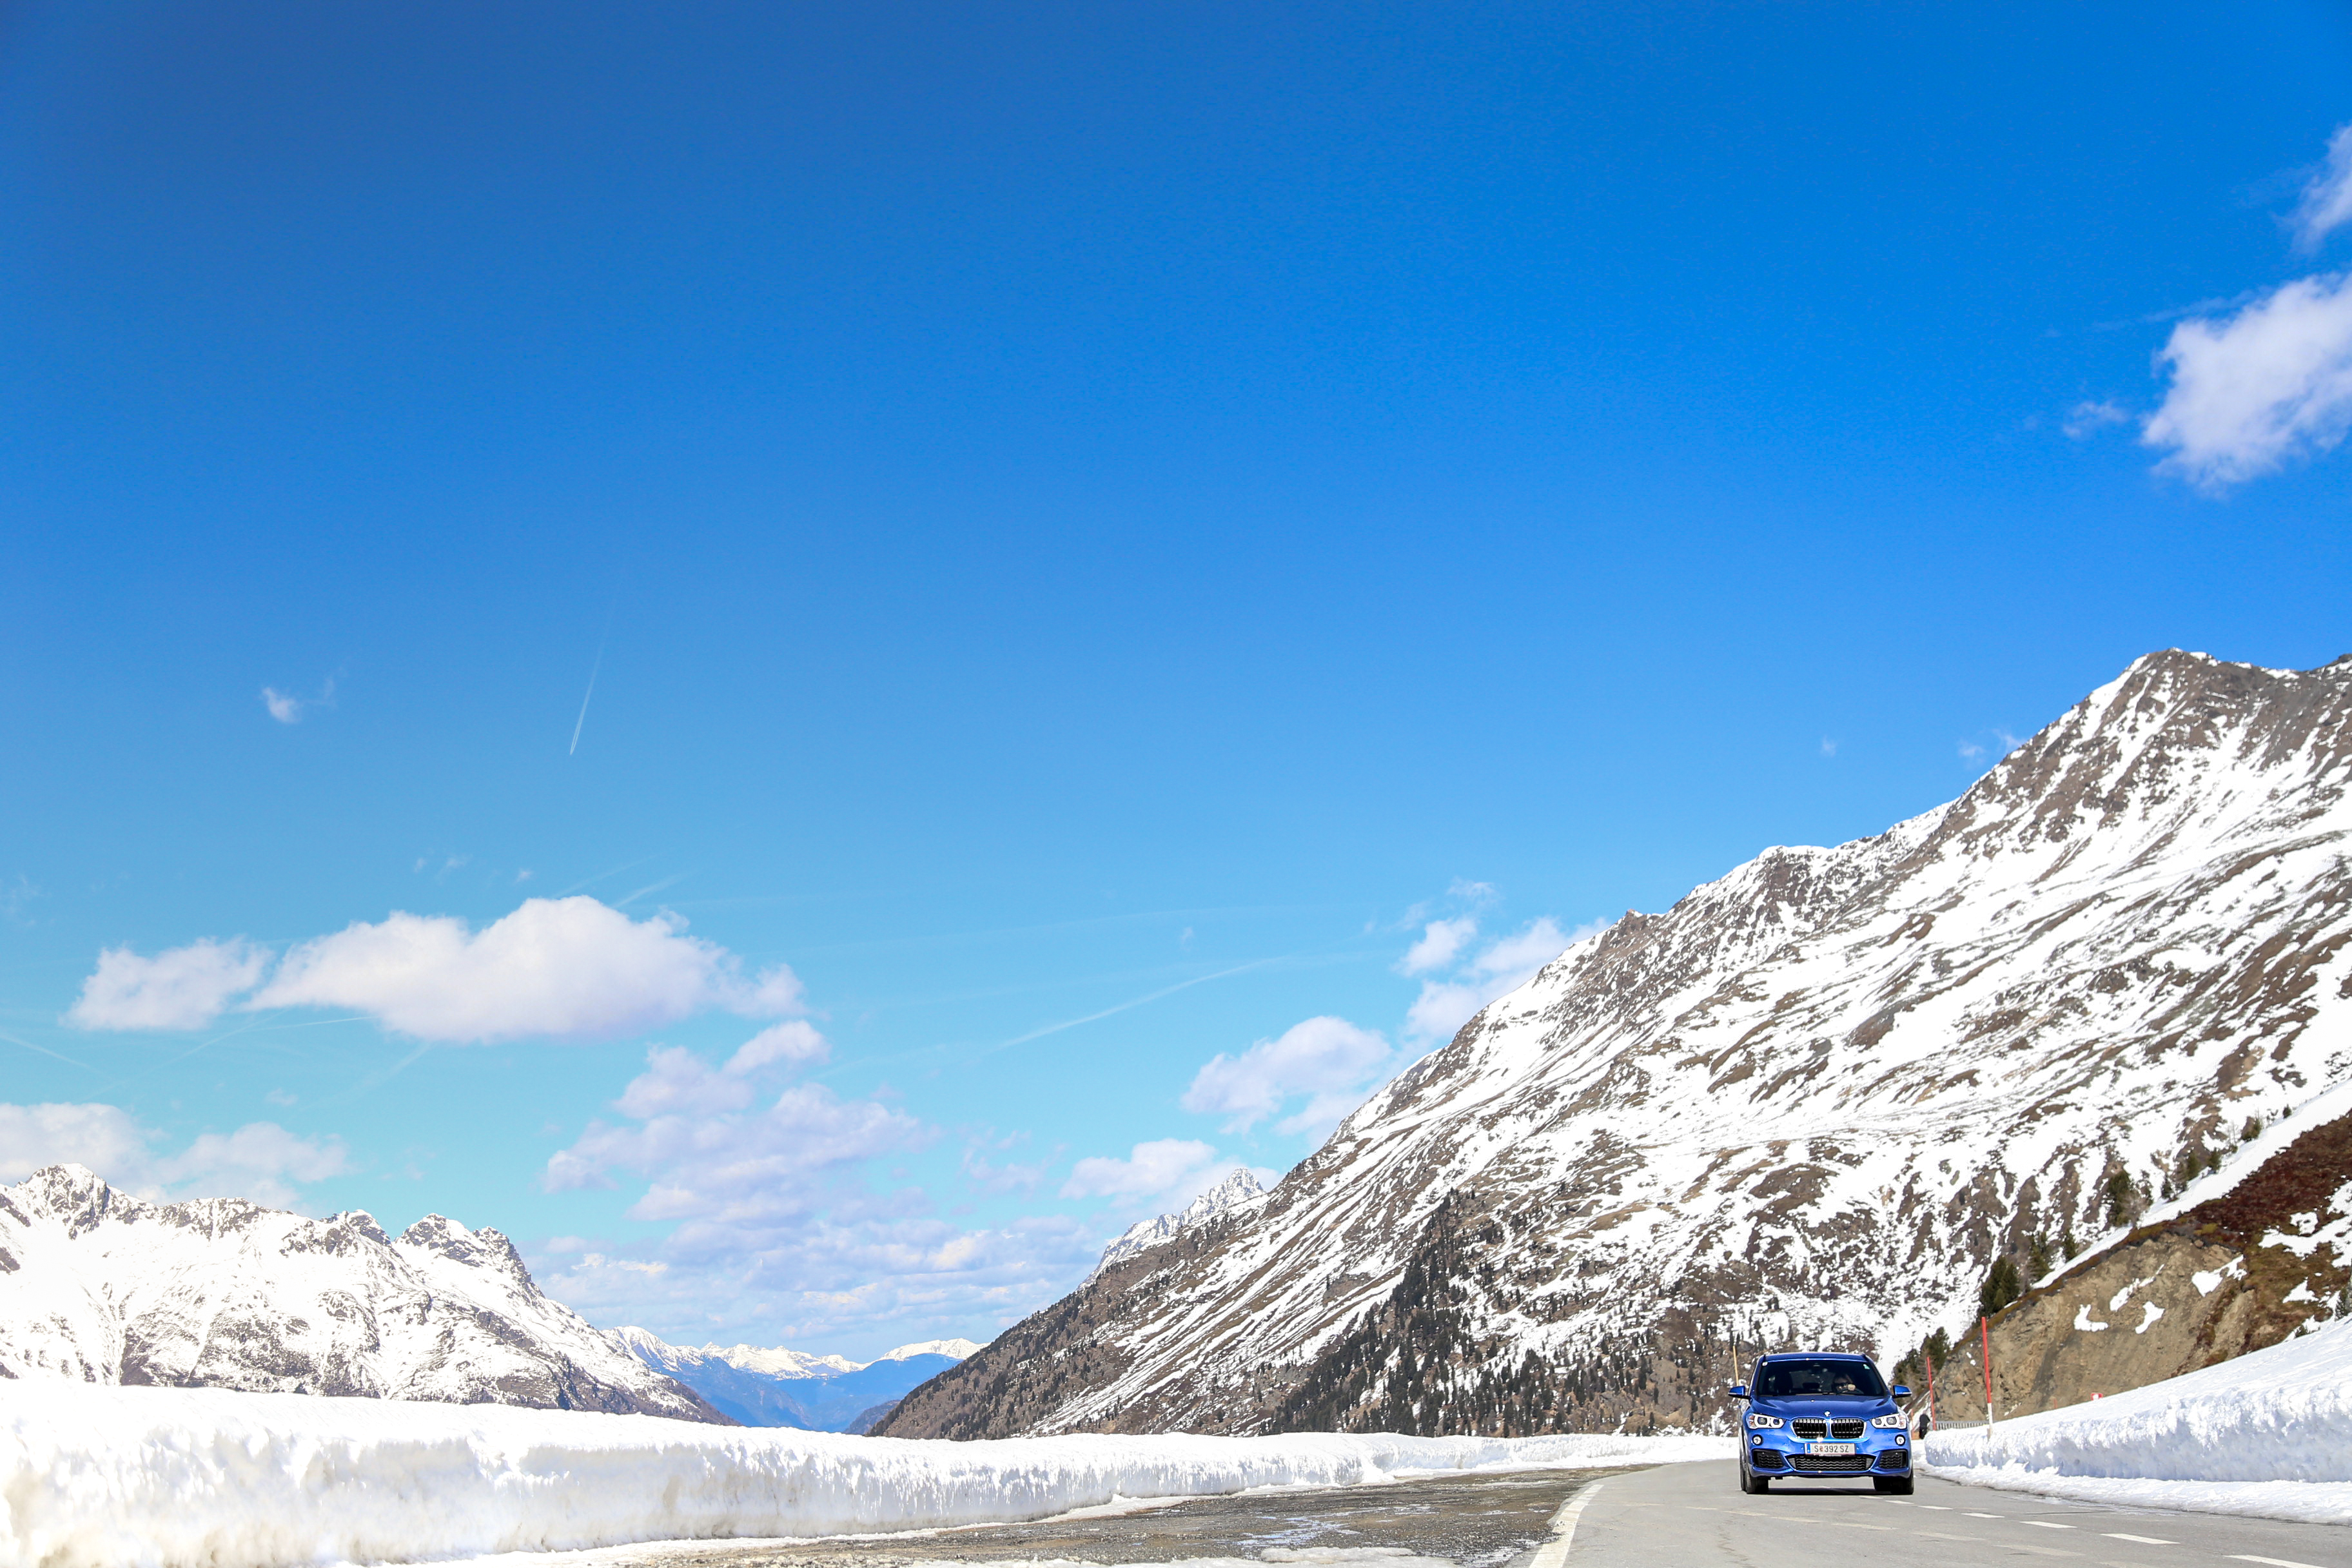 Der BMW X1: mein persönlicher Testbericht FreudeAmFahren SheerDrivingPleasure München BMWAG Ötztal SUV SAV Einser KompaktSUV X-Drive Allrad Offroad Jennifer PepperAndGold Testride Testbericht 